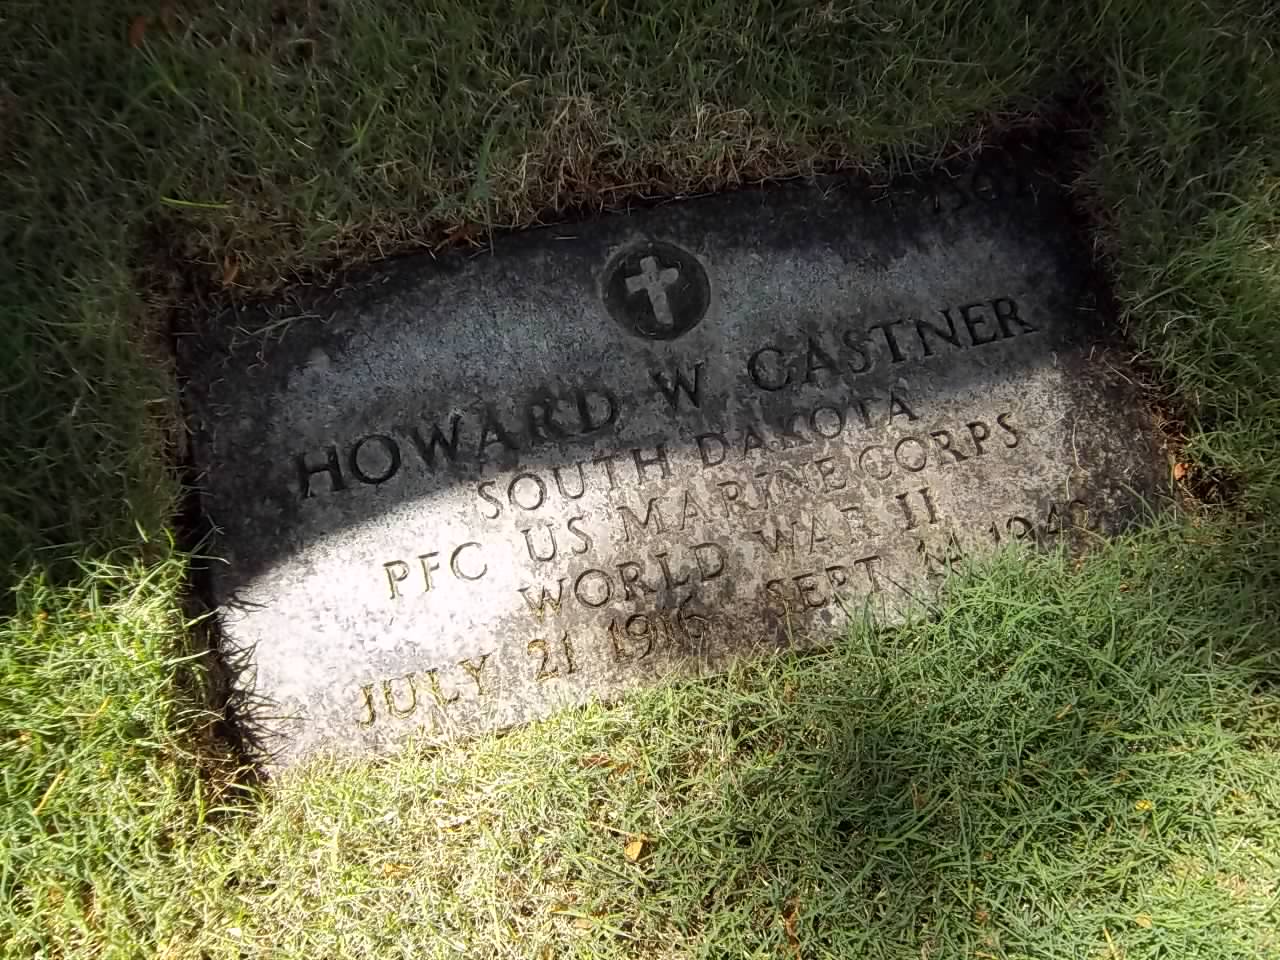 H. Castner (Grave)